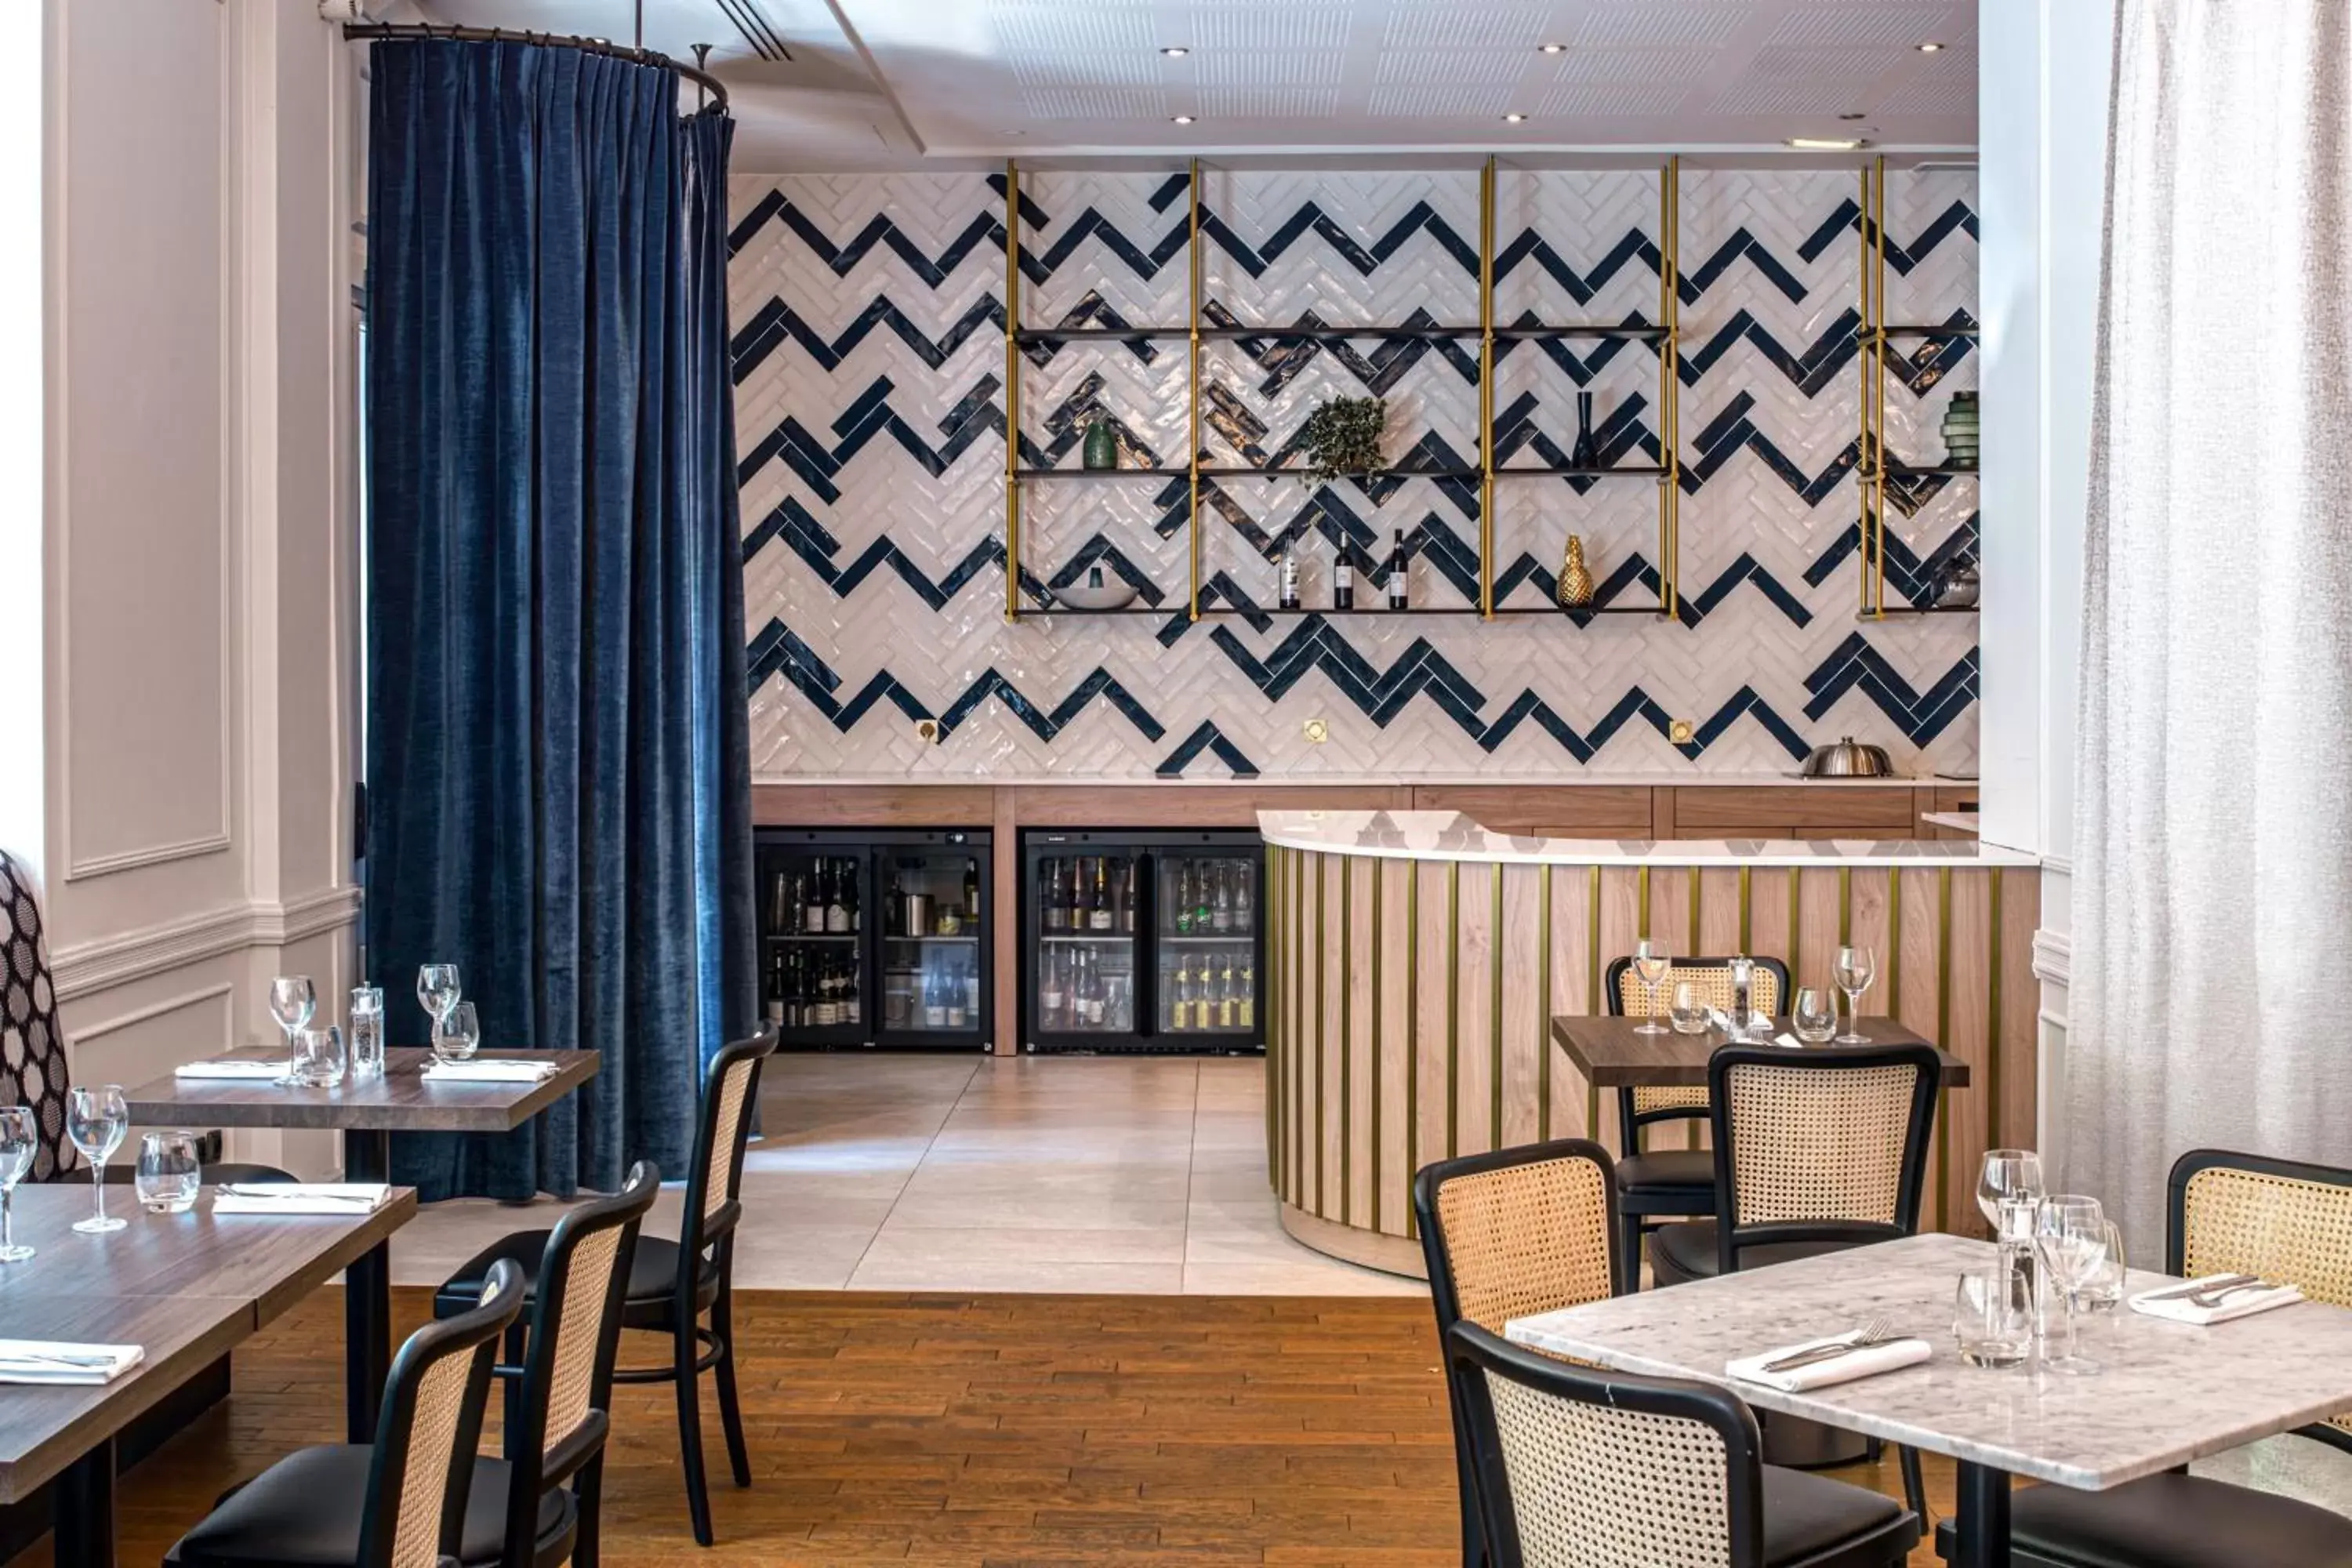 Restaurant/Places to Eat in Paris Marriott Opera Ambassador Hotel